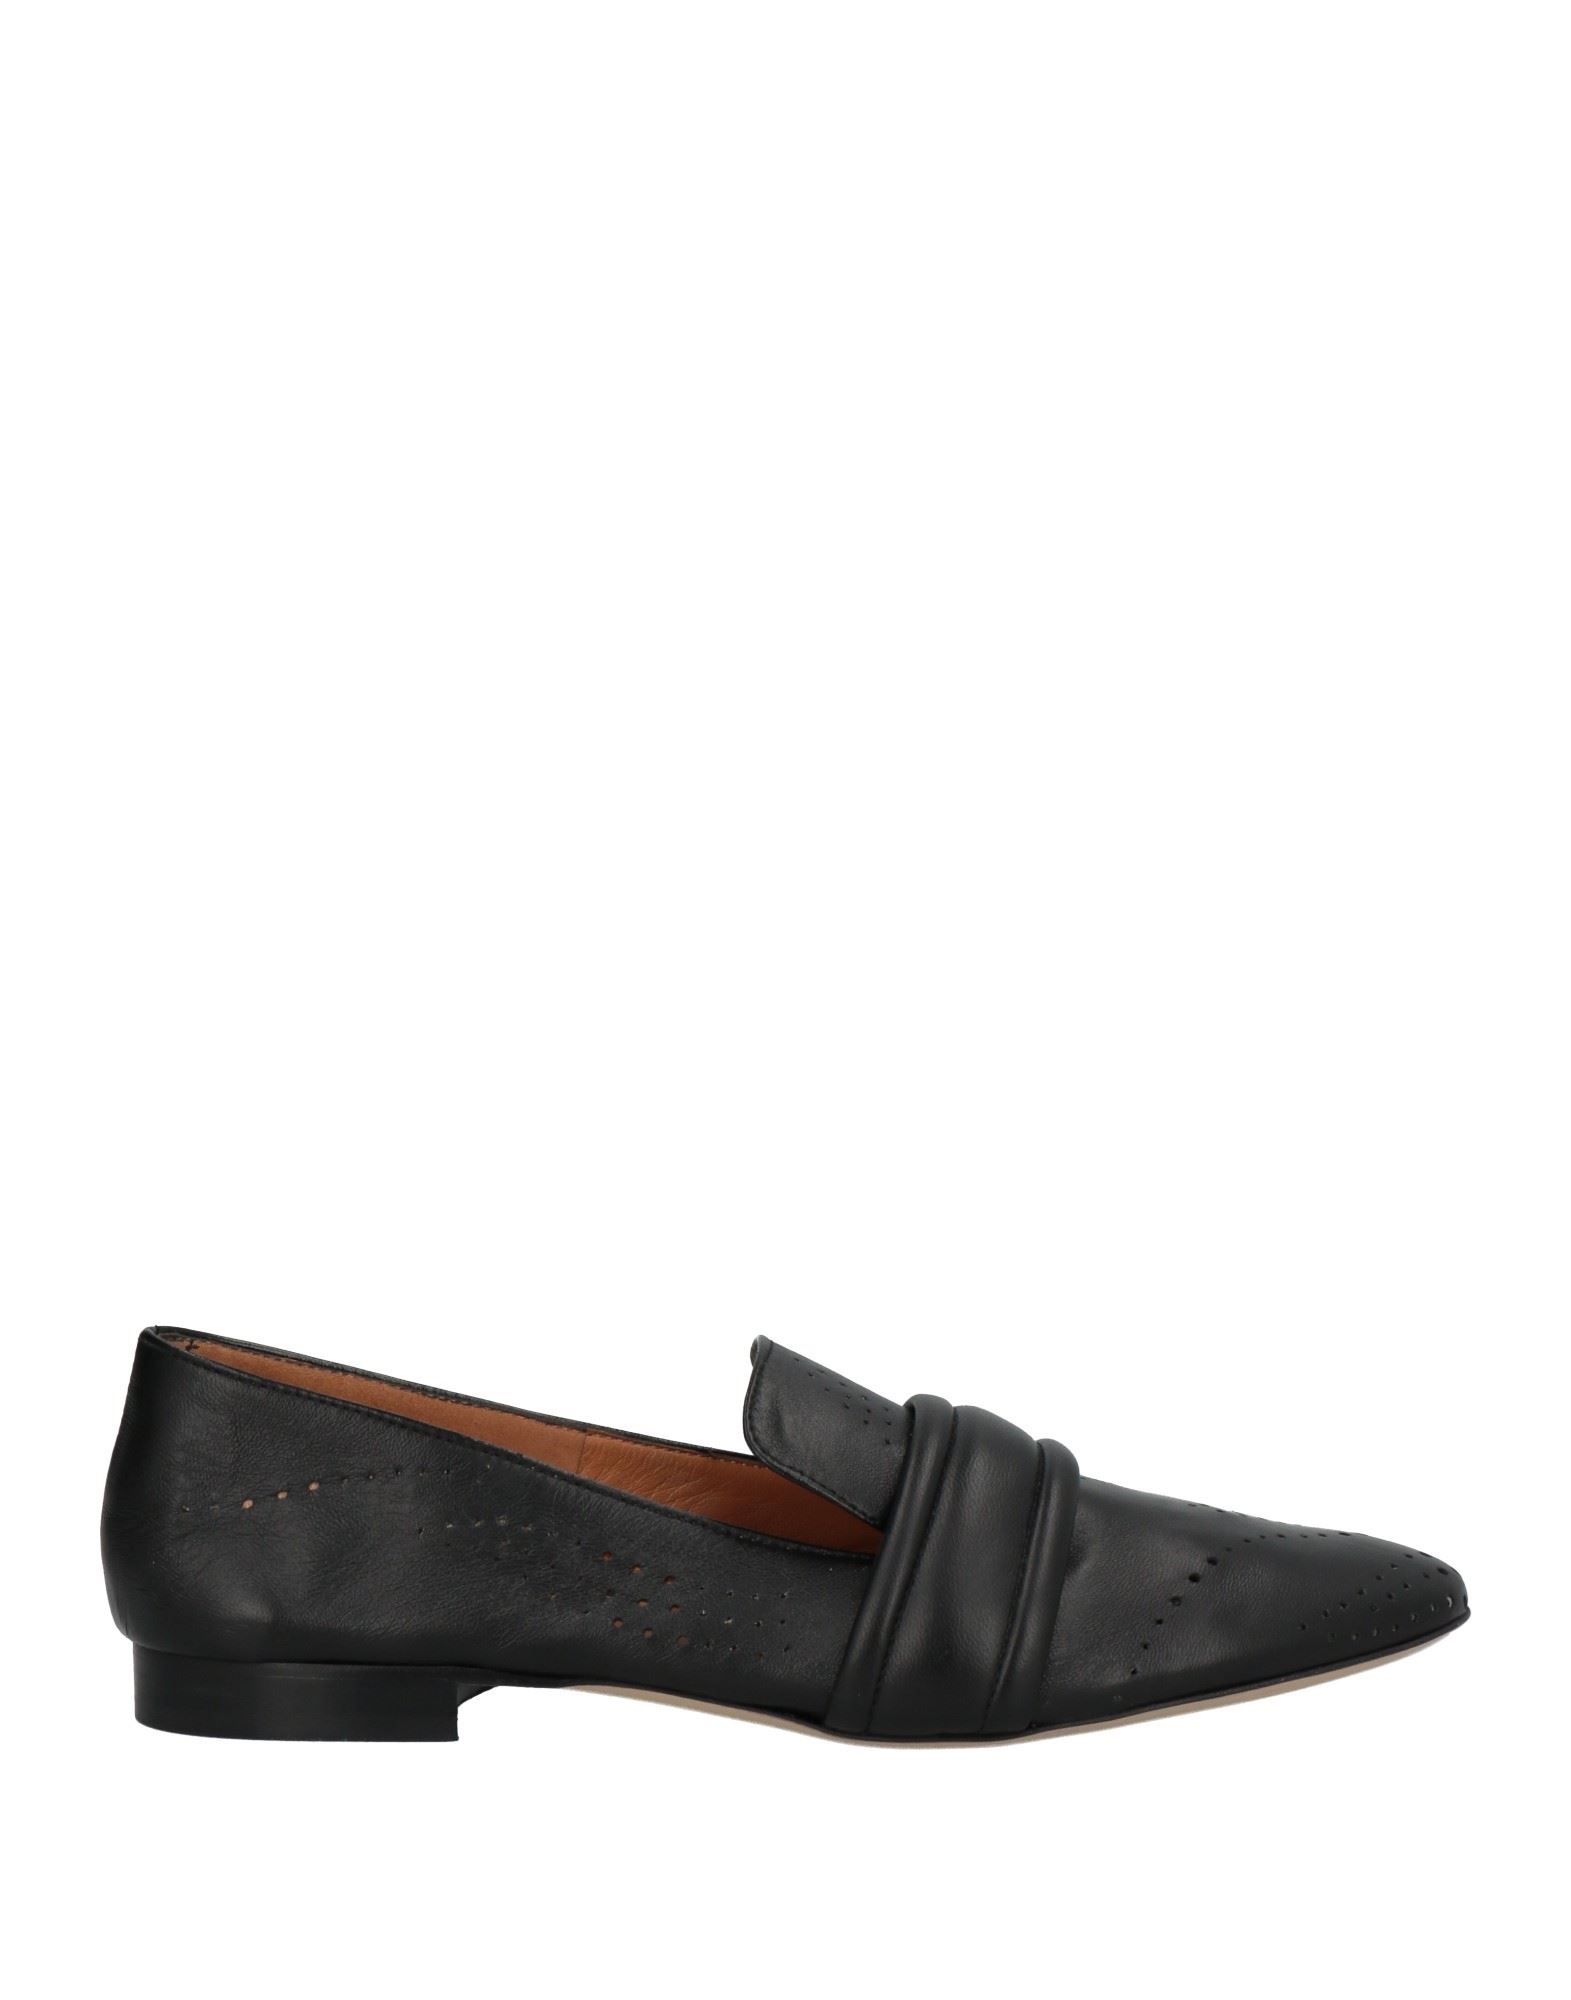 Carrie Latt Loafers In Black | ModeSens